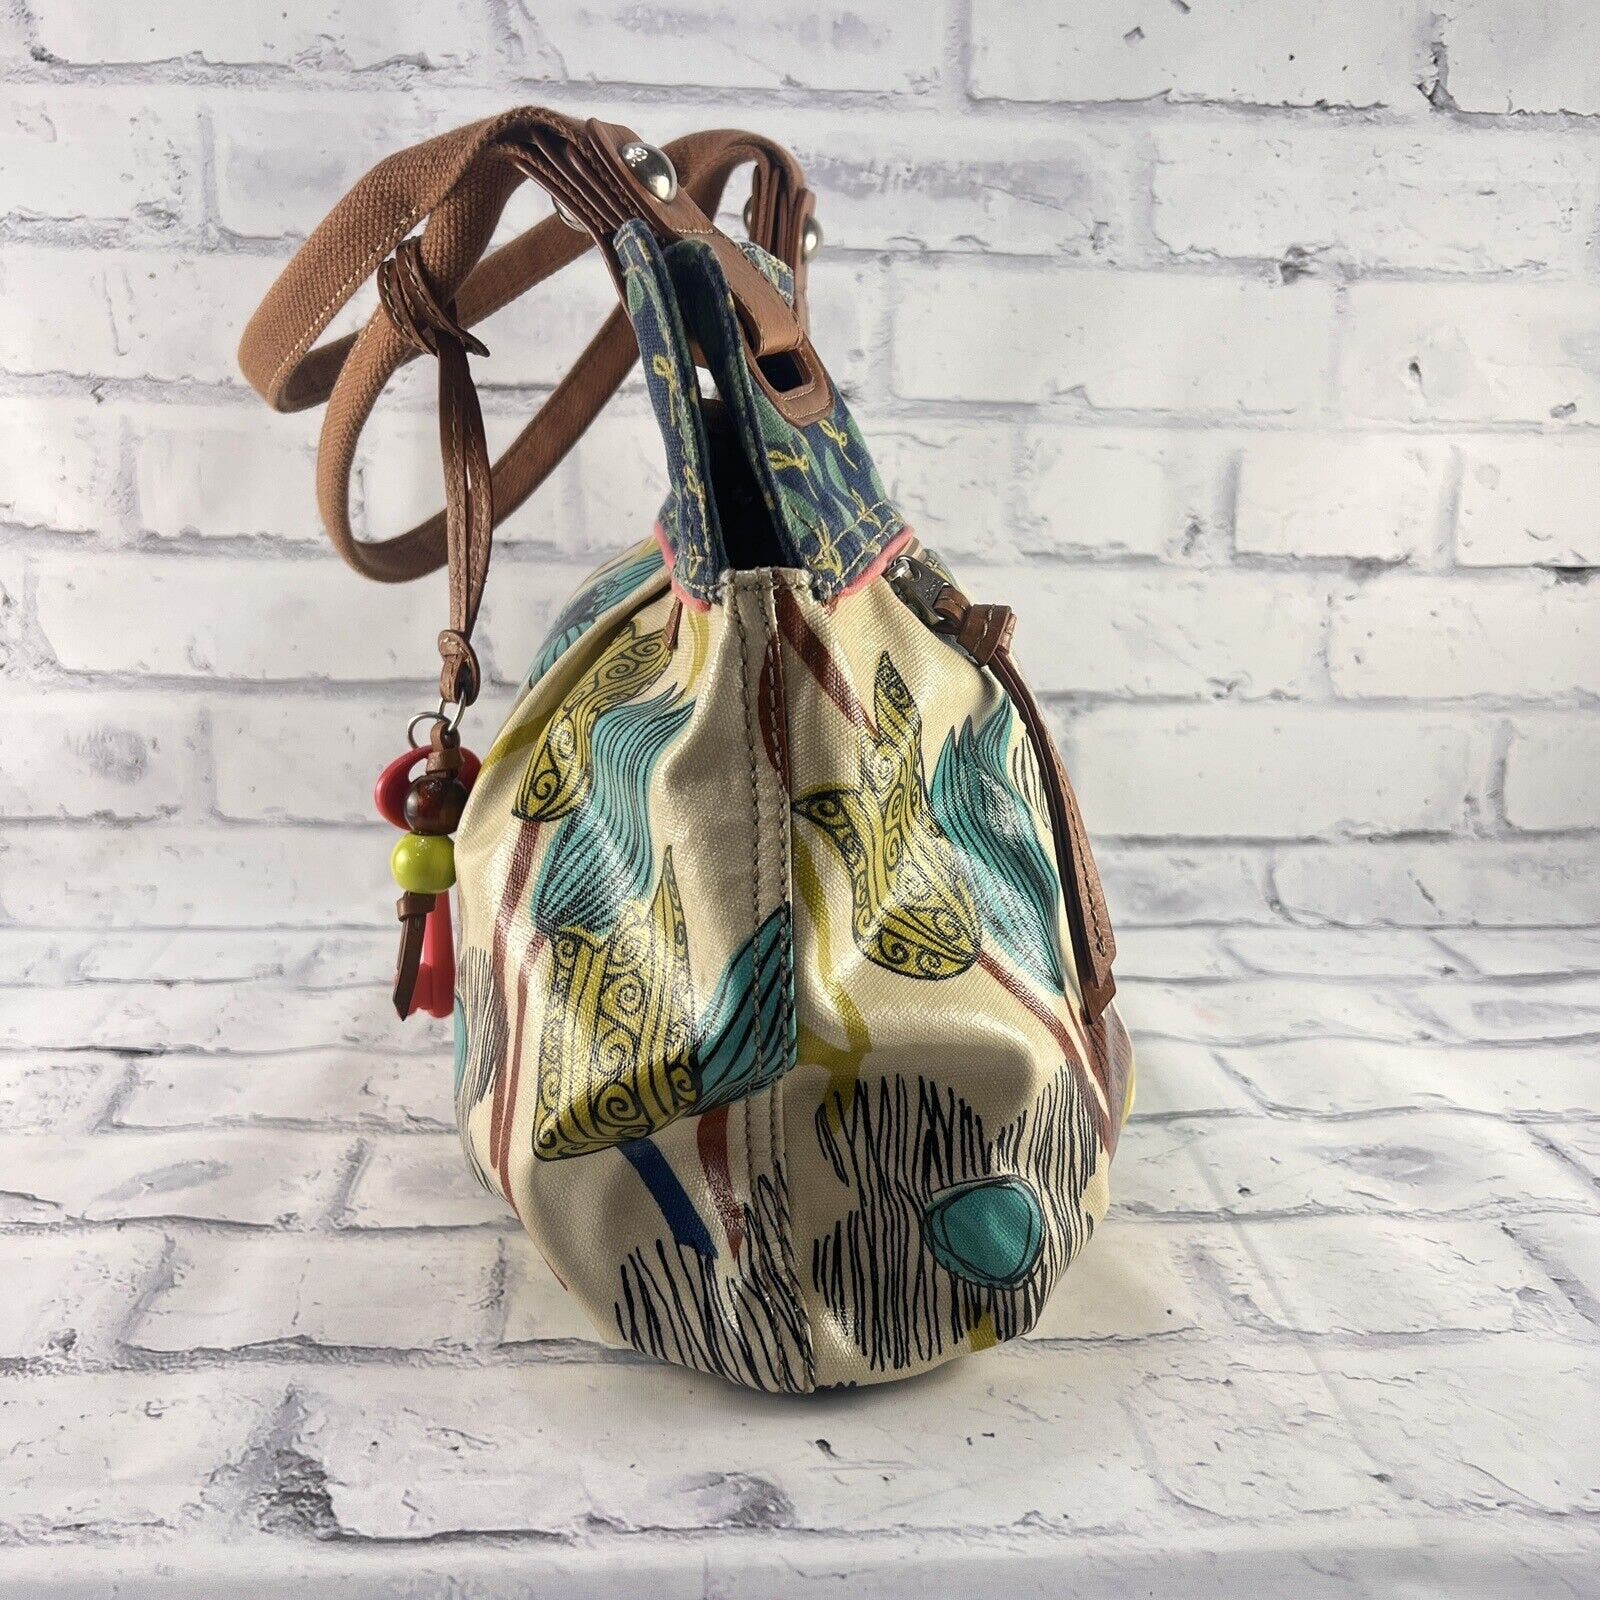 Fossil Key-Per Coated Canvas Tote Handbag Floral Pattern Large Shoulder Bag